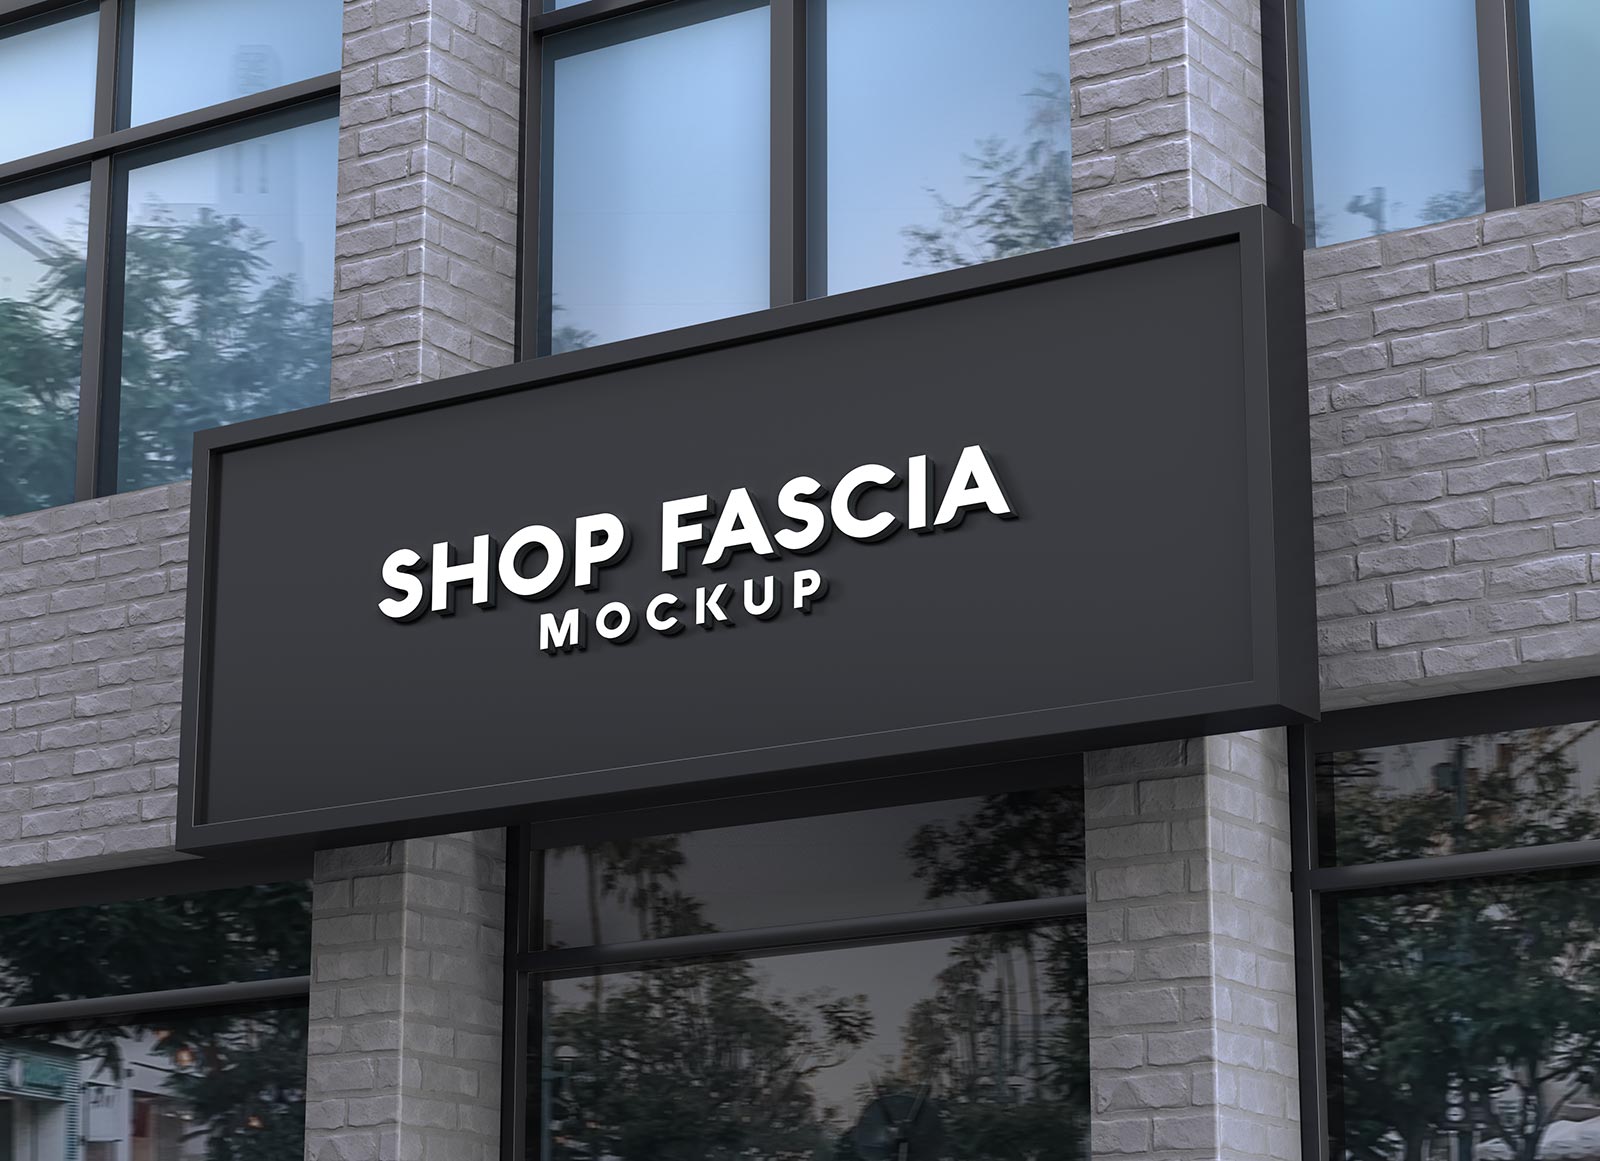 Free-Shop-Fascia-Signage-Mockup